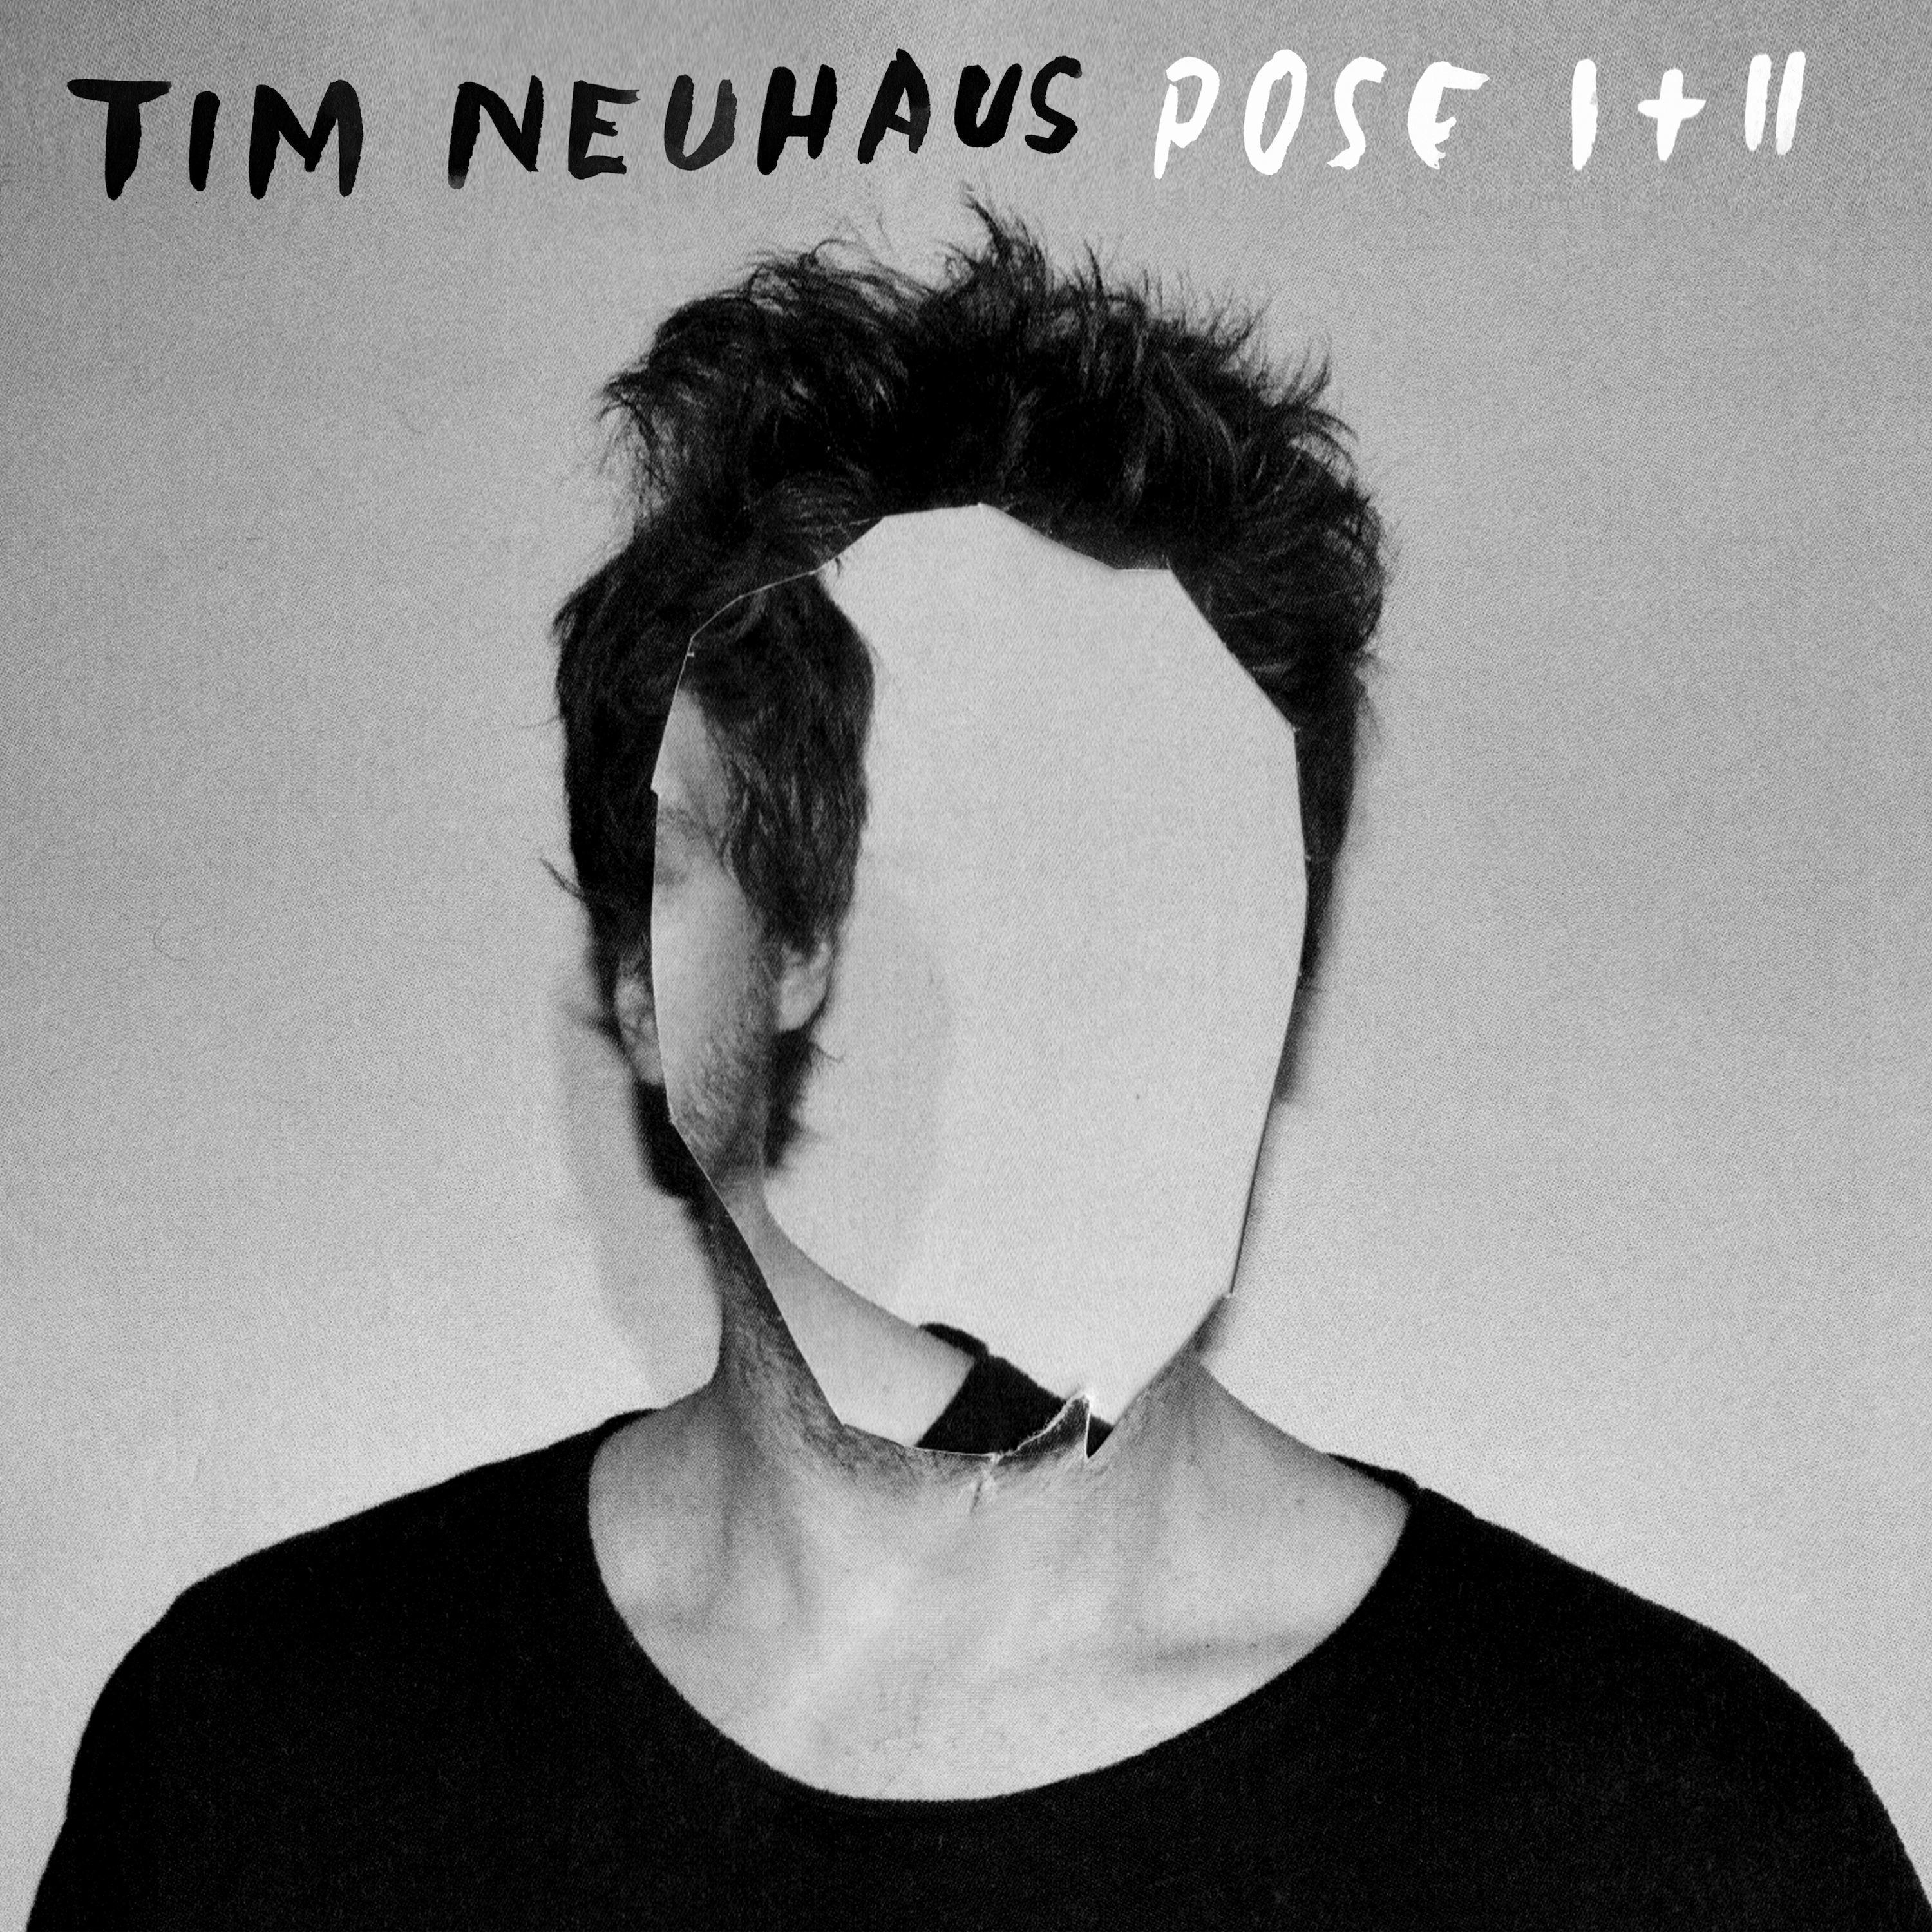 Tim Neuhaus - Starting to Lose It